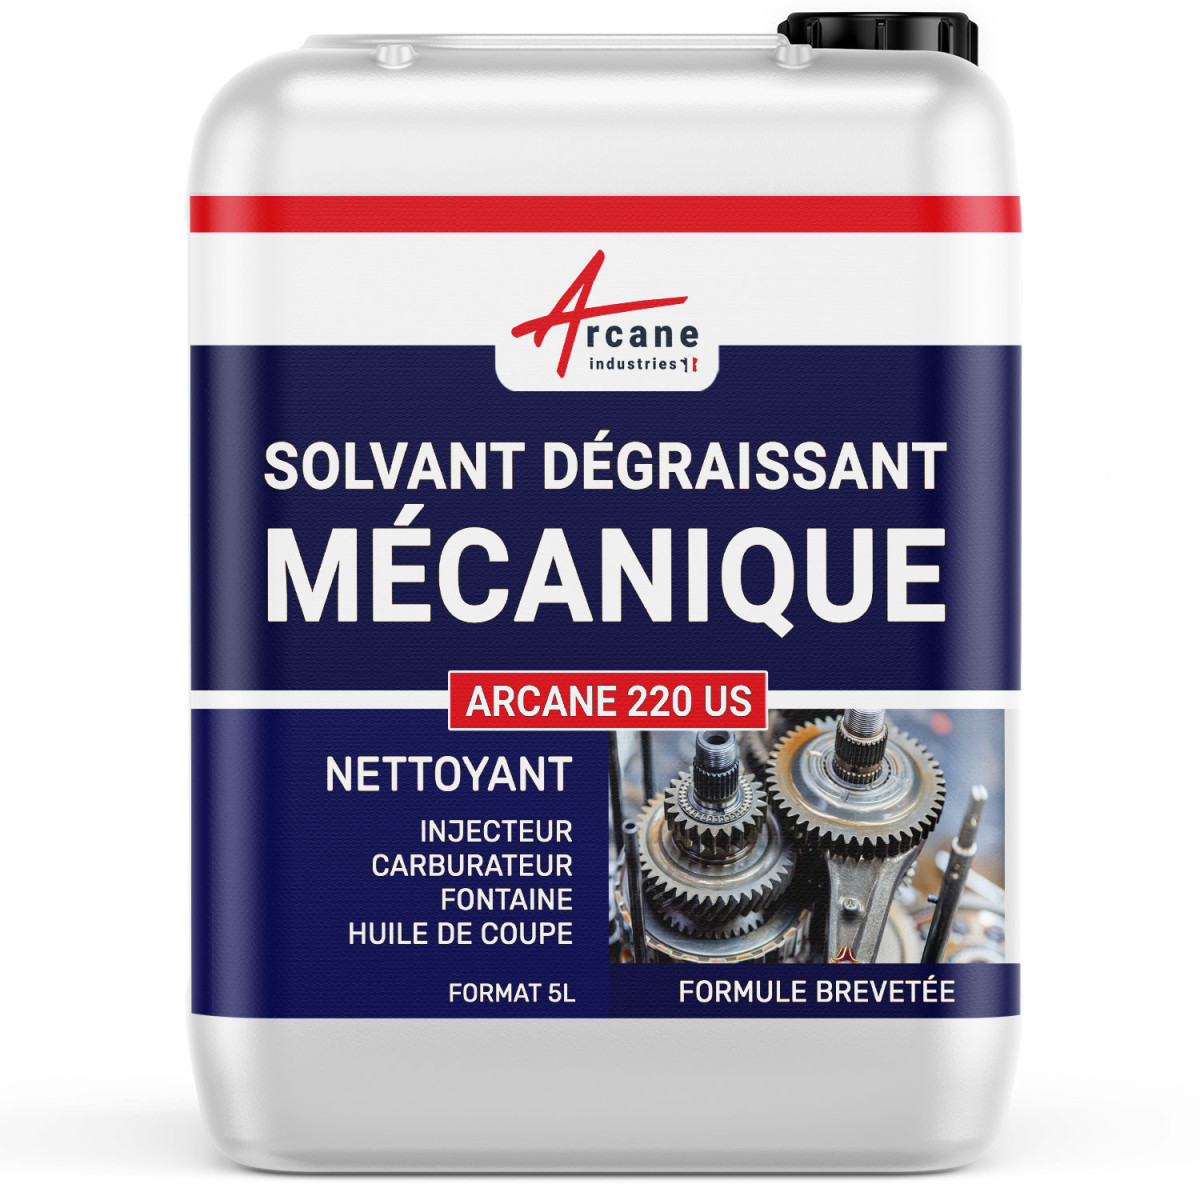 DÉGRAISSANT PIÈCES MÉCANIQUES - Solvant dégraissage Mécanique Nettoyant injecteur carburateur Fontaine graisse huile de coupe